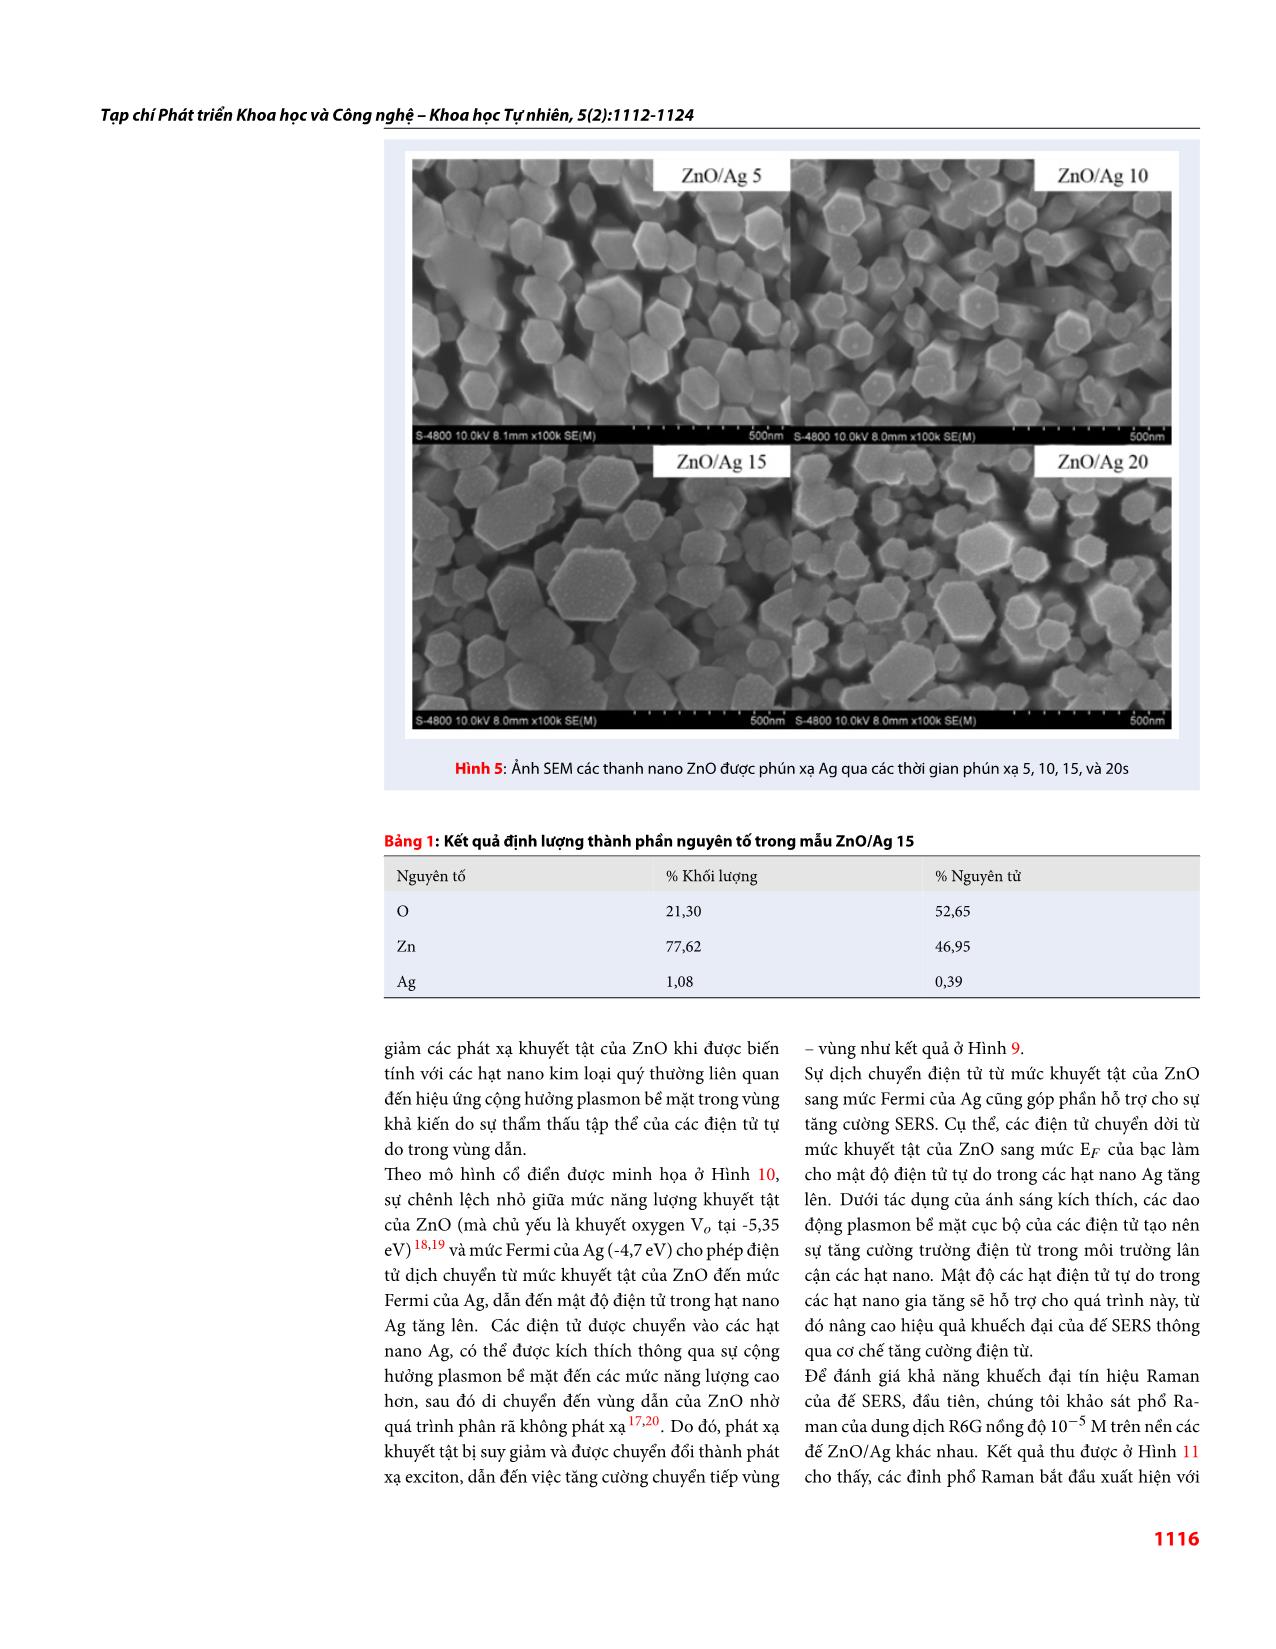 Khảo sát sự ảnh hưởng của mật độ hạt nano Ag trên cấu trúc thanh nano ZnO/Ag nhằm tăng cường tín hiệu Raman của đế SERS đối với hợp chất Abamectin trang 5